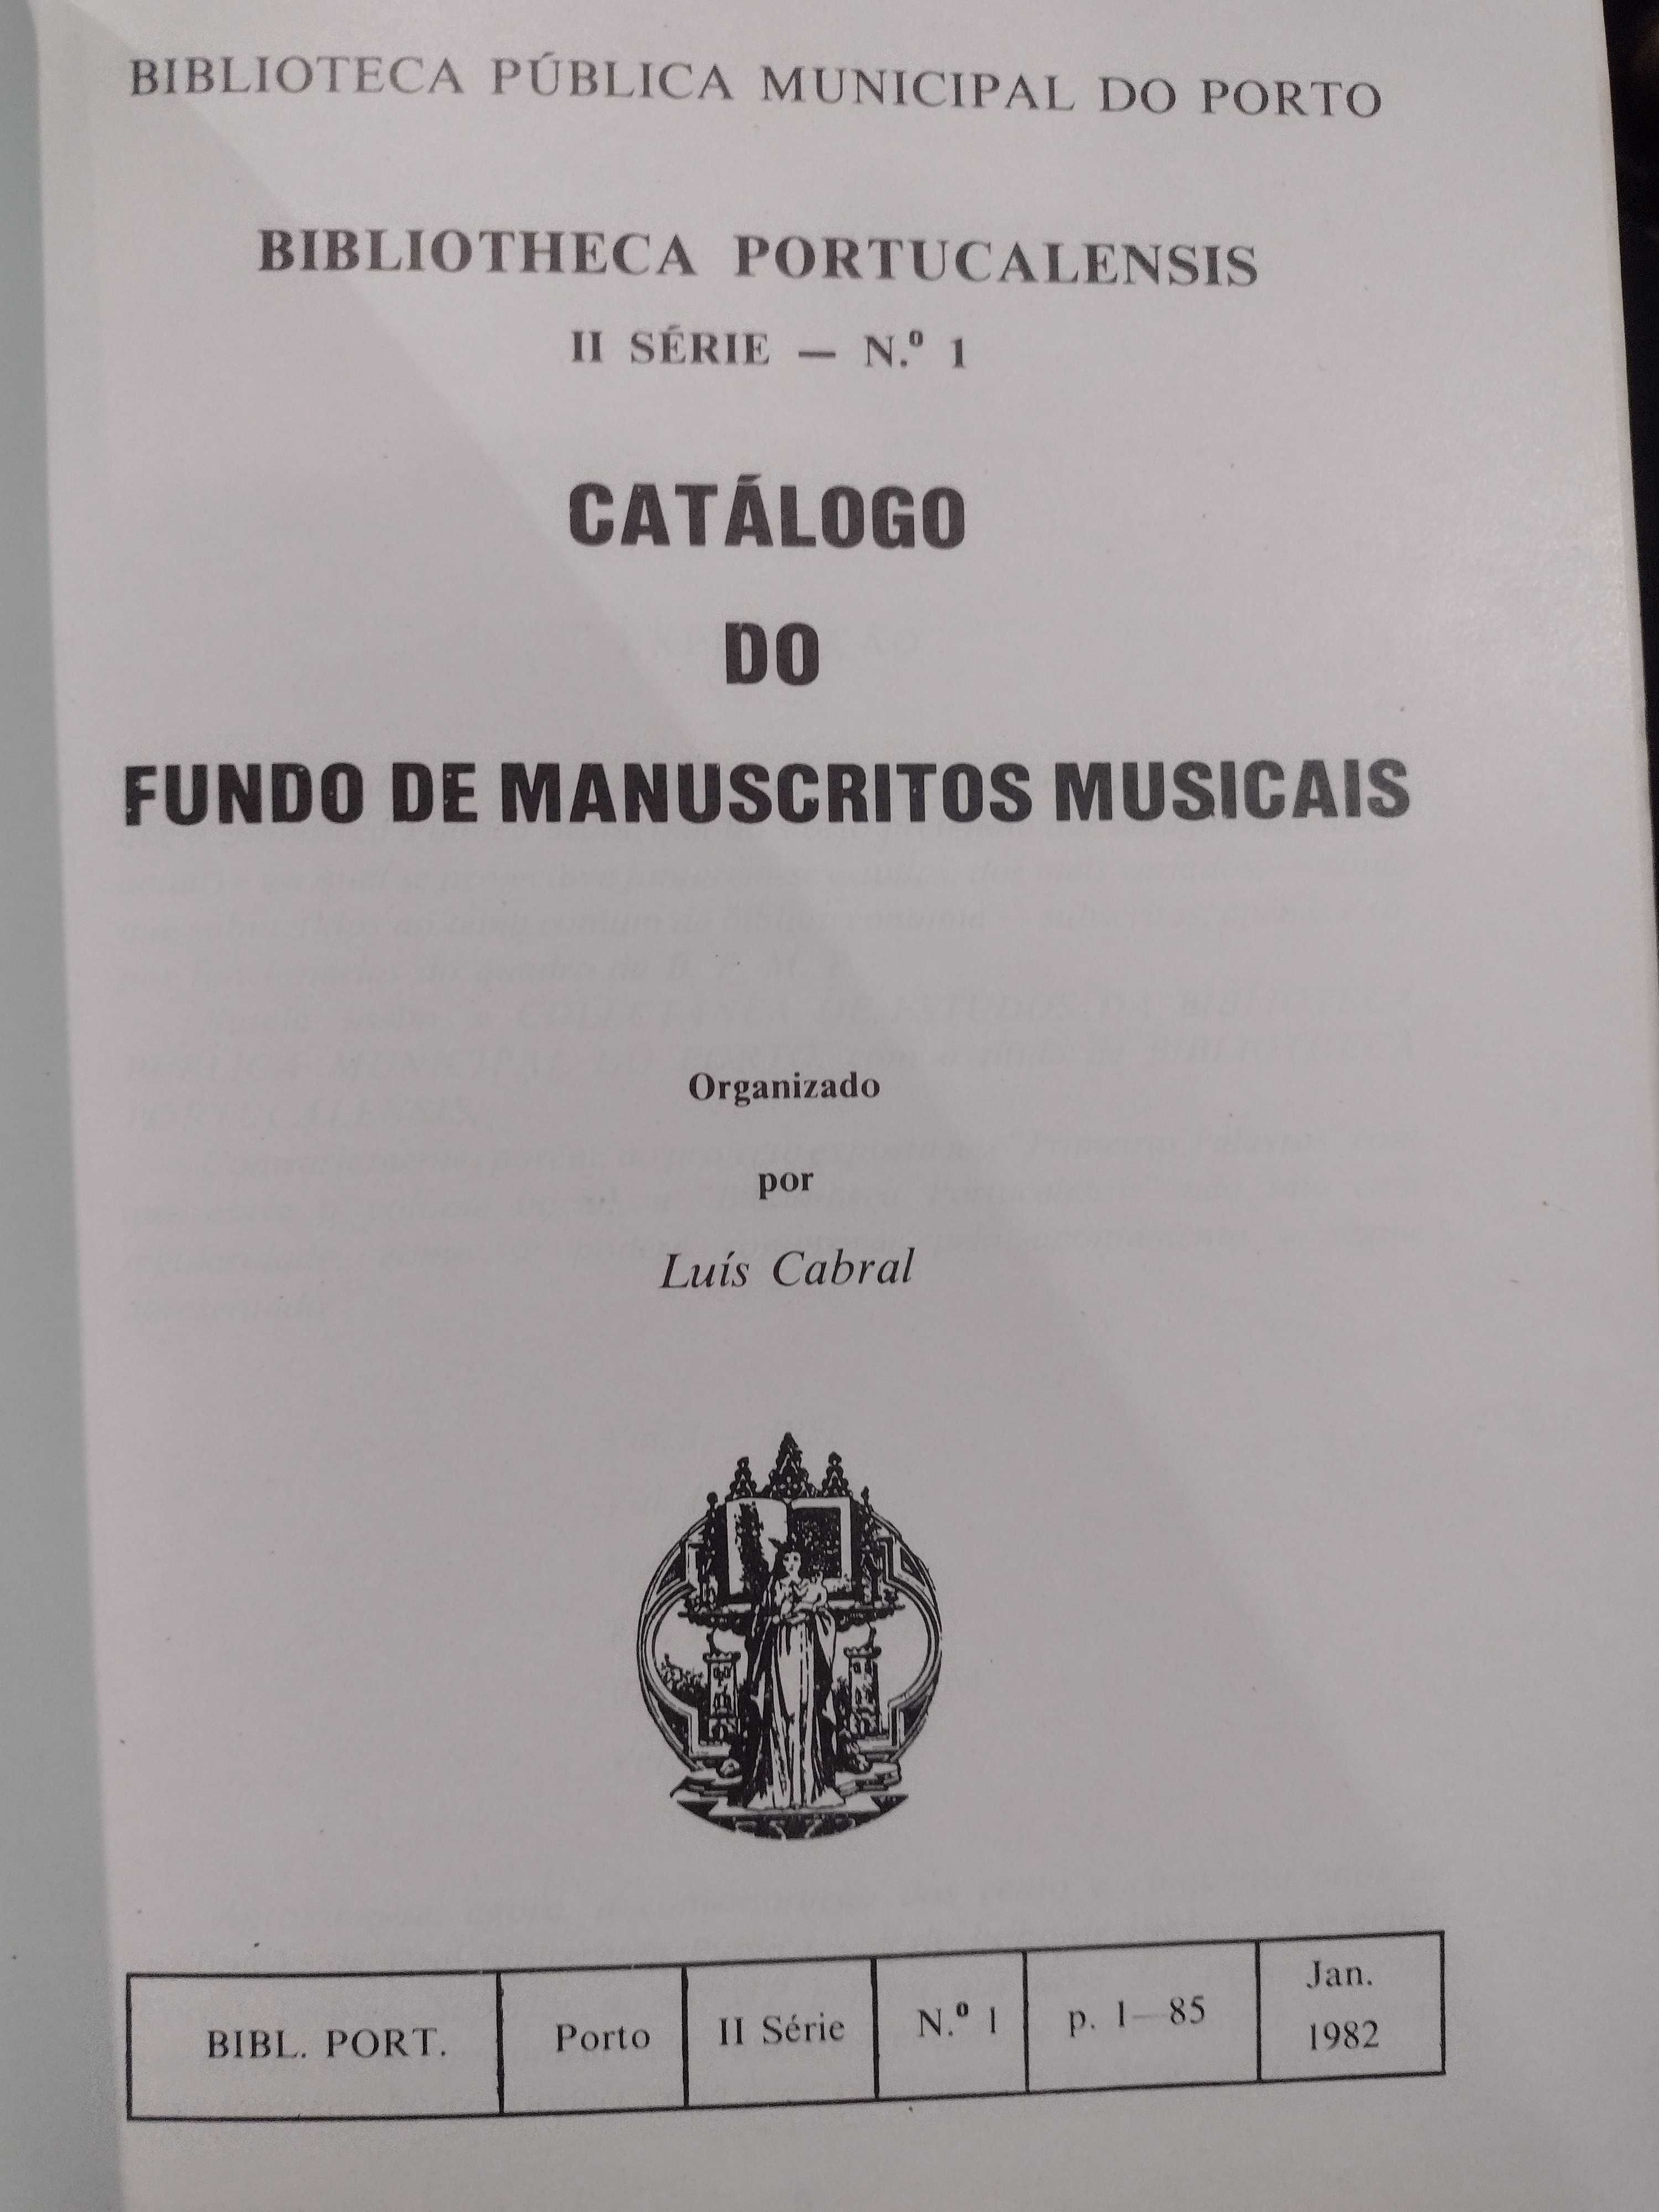 Fundo de Manuscritos Musicais BPMP II Série nº1